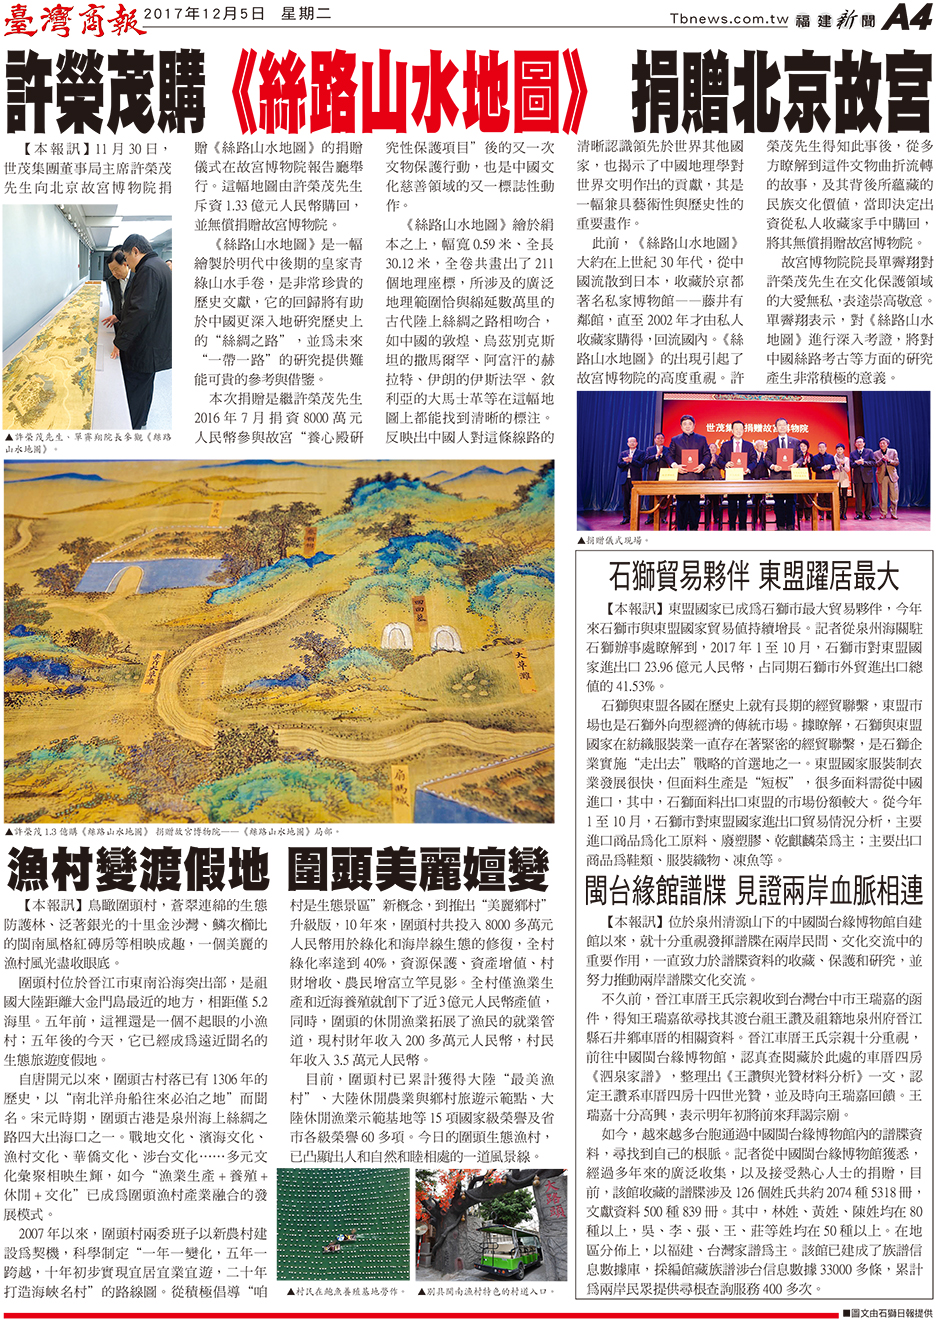 許榮茂購《絲路山水地圖》 捐贈北京故宮